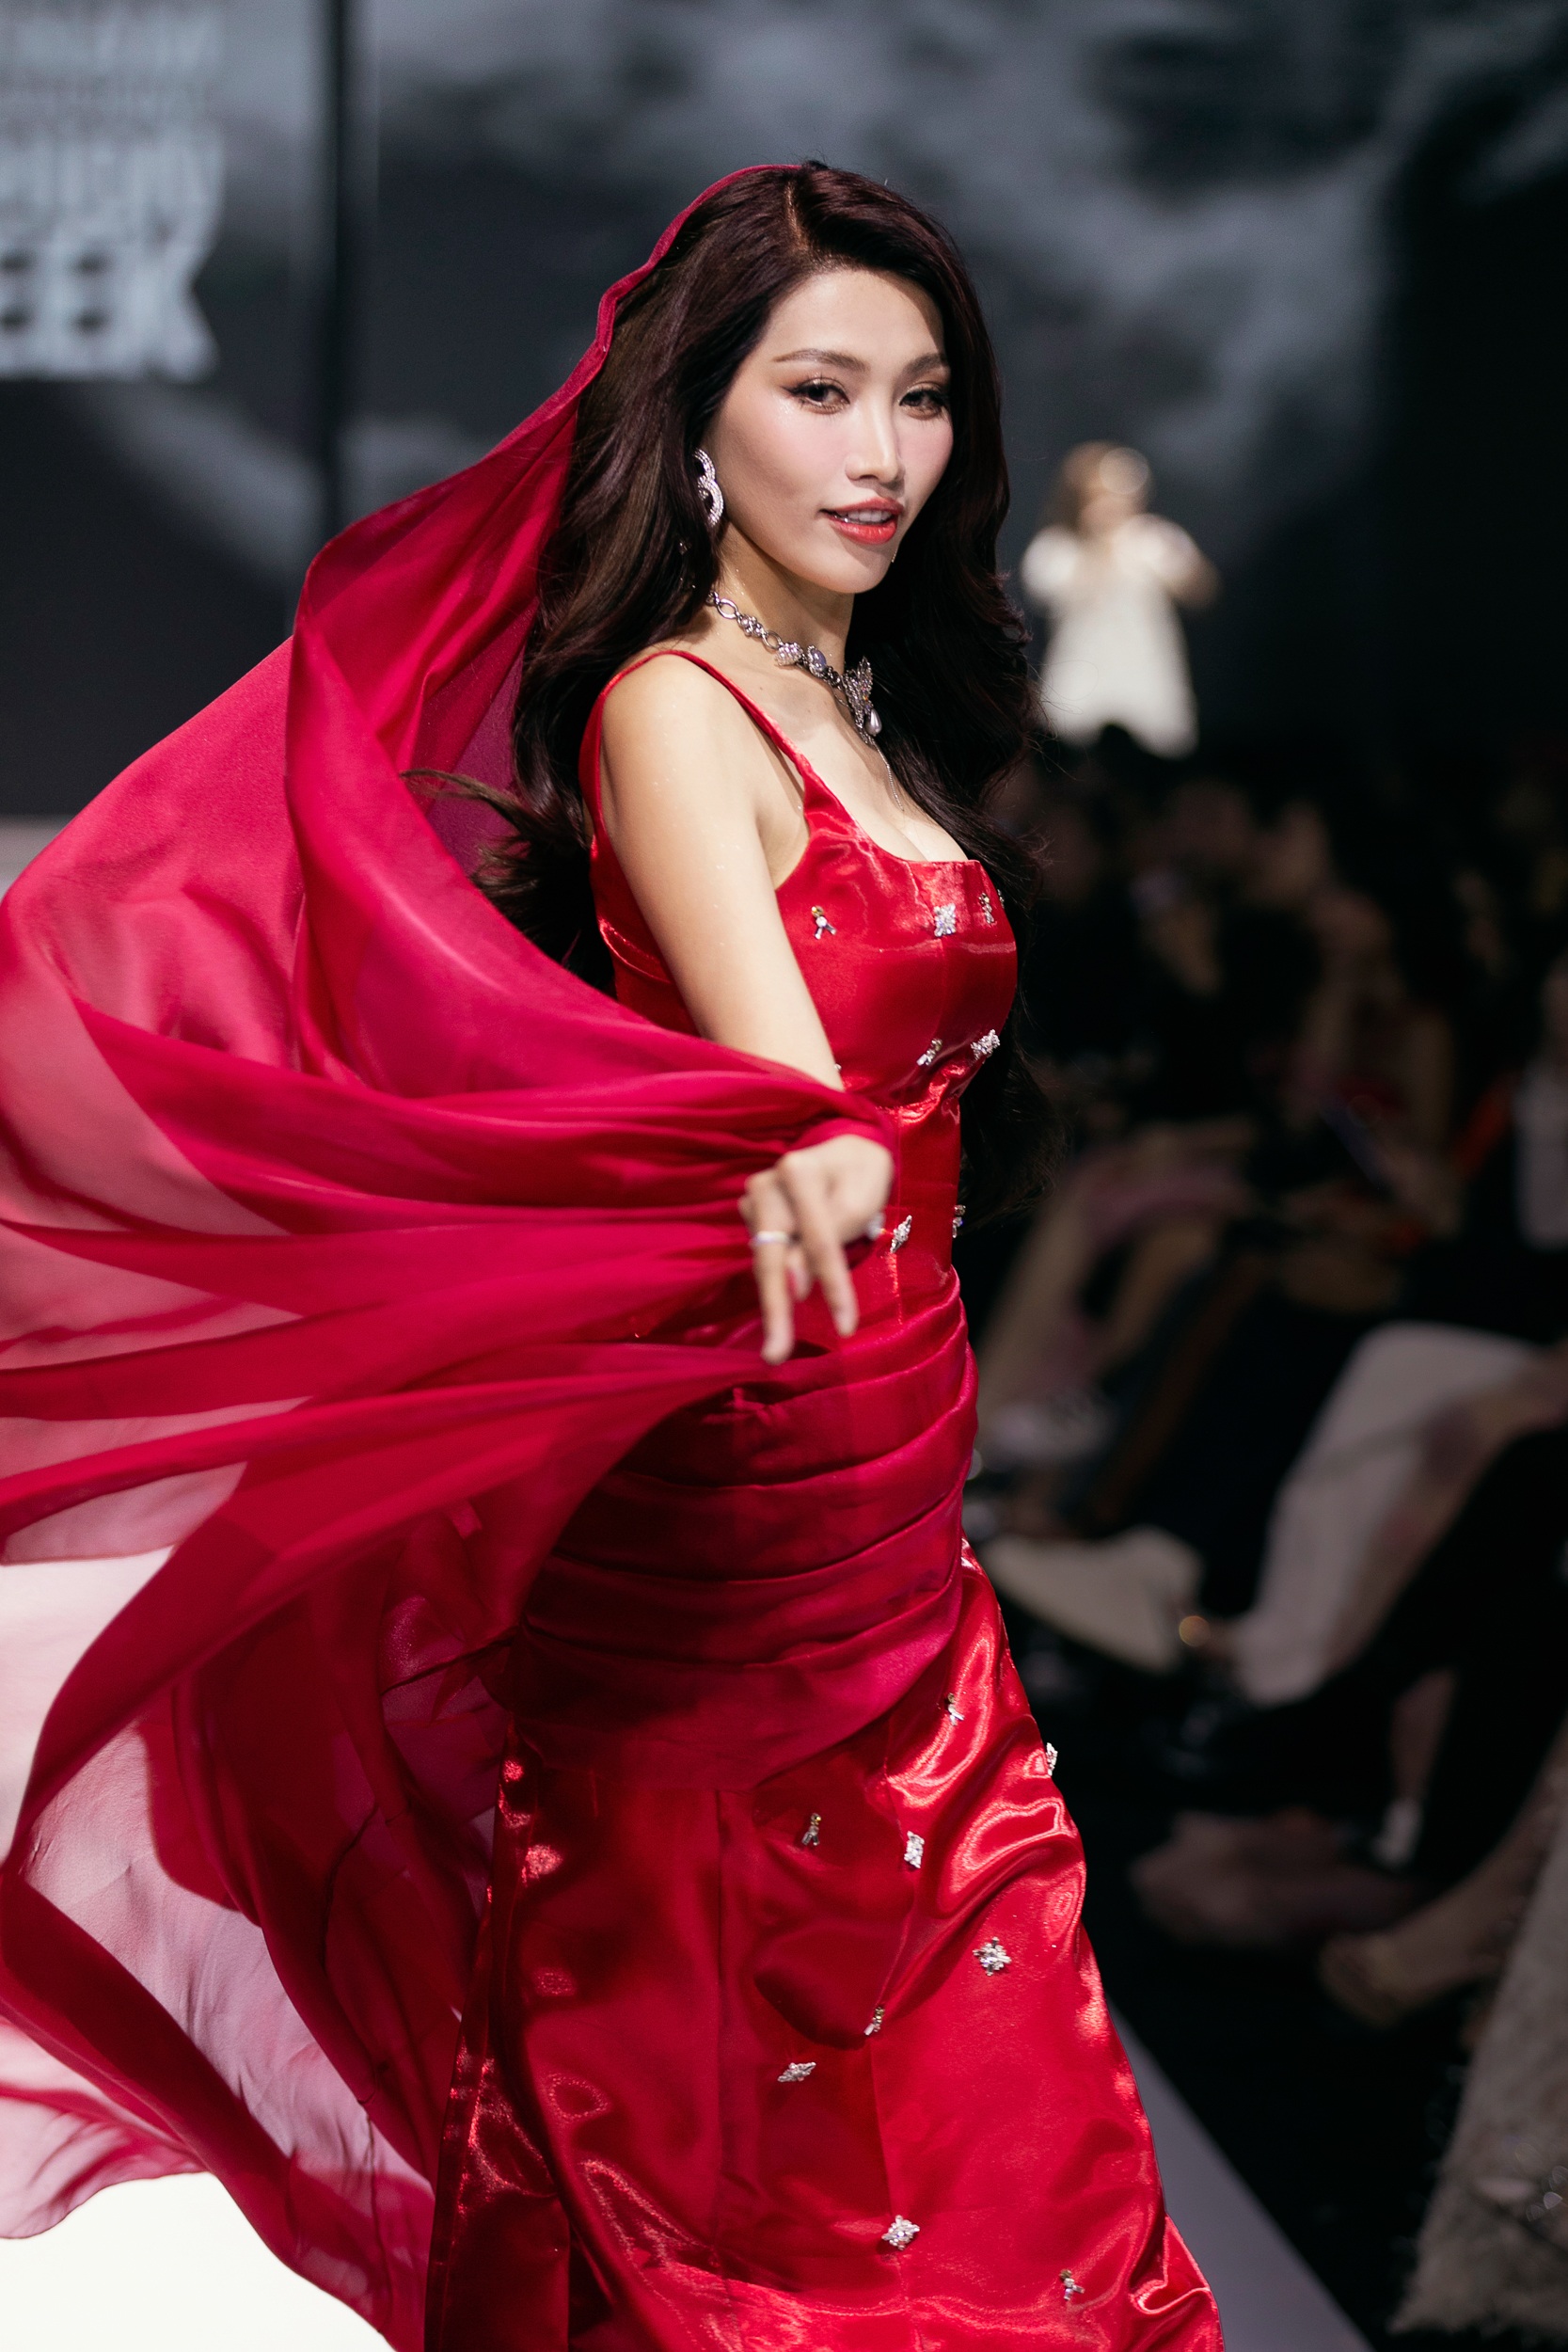 Quỳnh Châu khoác bộ đầm đỏ ôm sát được "đo ni đóng giày" theo số đo, tôn trọn vẹn vóc dáng. Trang phục dùng chất liệu tafta, đính kết điểm xuyết đá lấp lánh, phối cùng áo choàng tạo vẻ quyền lực như nữ thần. 